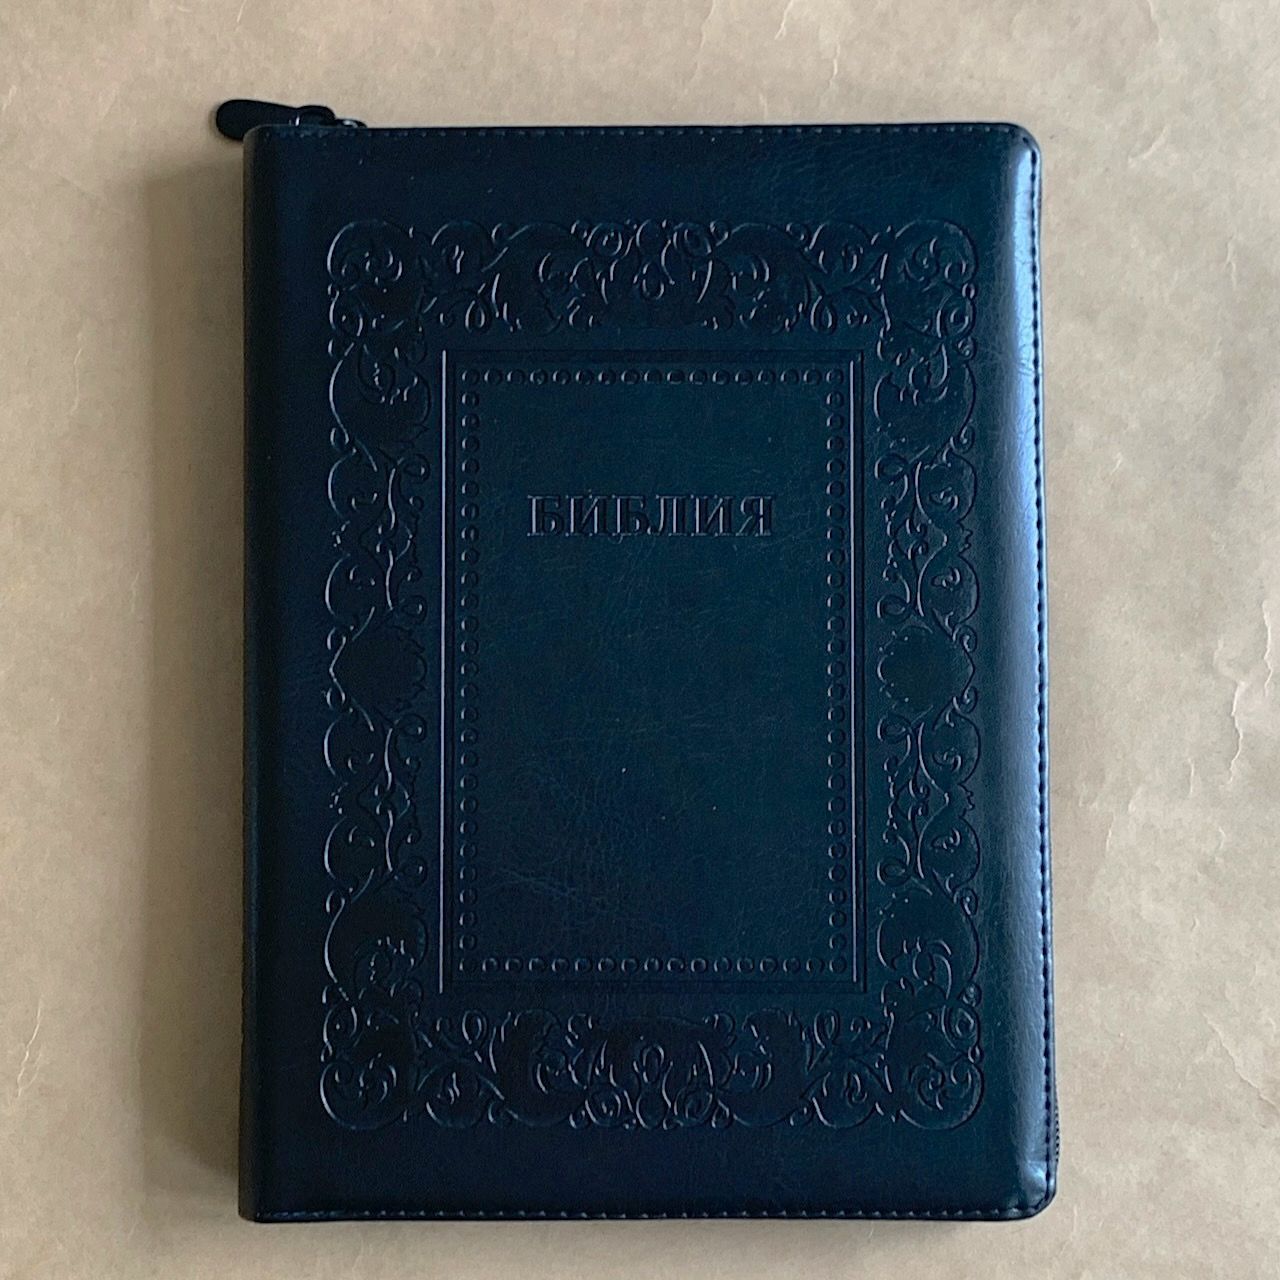 Библия 076zti код G6, дизайн "термо рамка барокко", переплет из искусственной кожи на молнии с индексами, цвет черный металлик, размер 180x243 мм